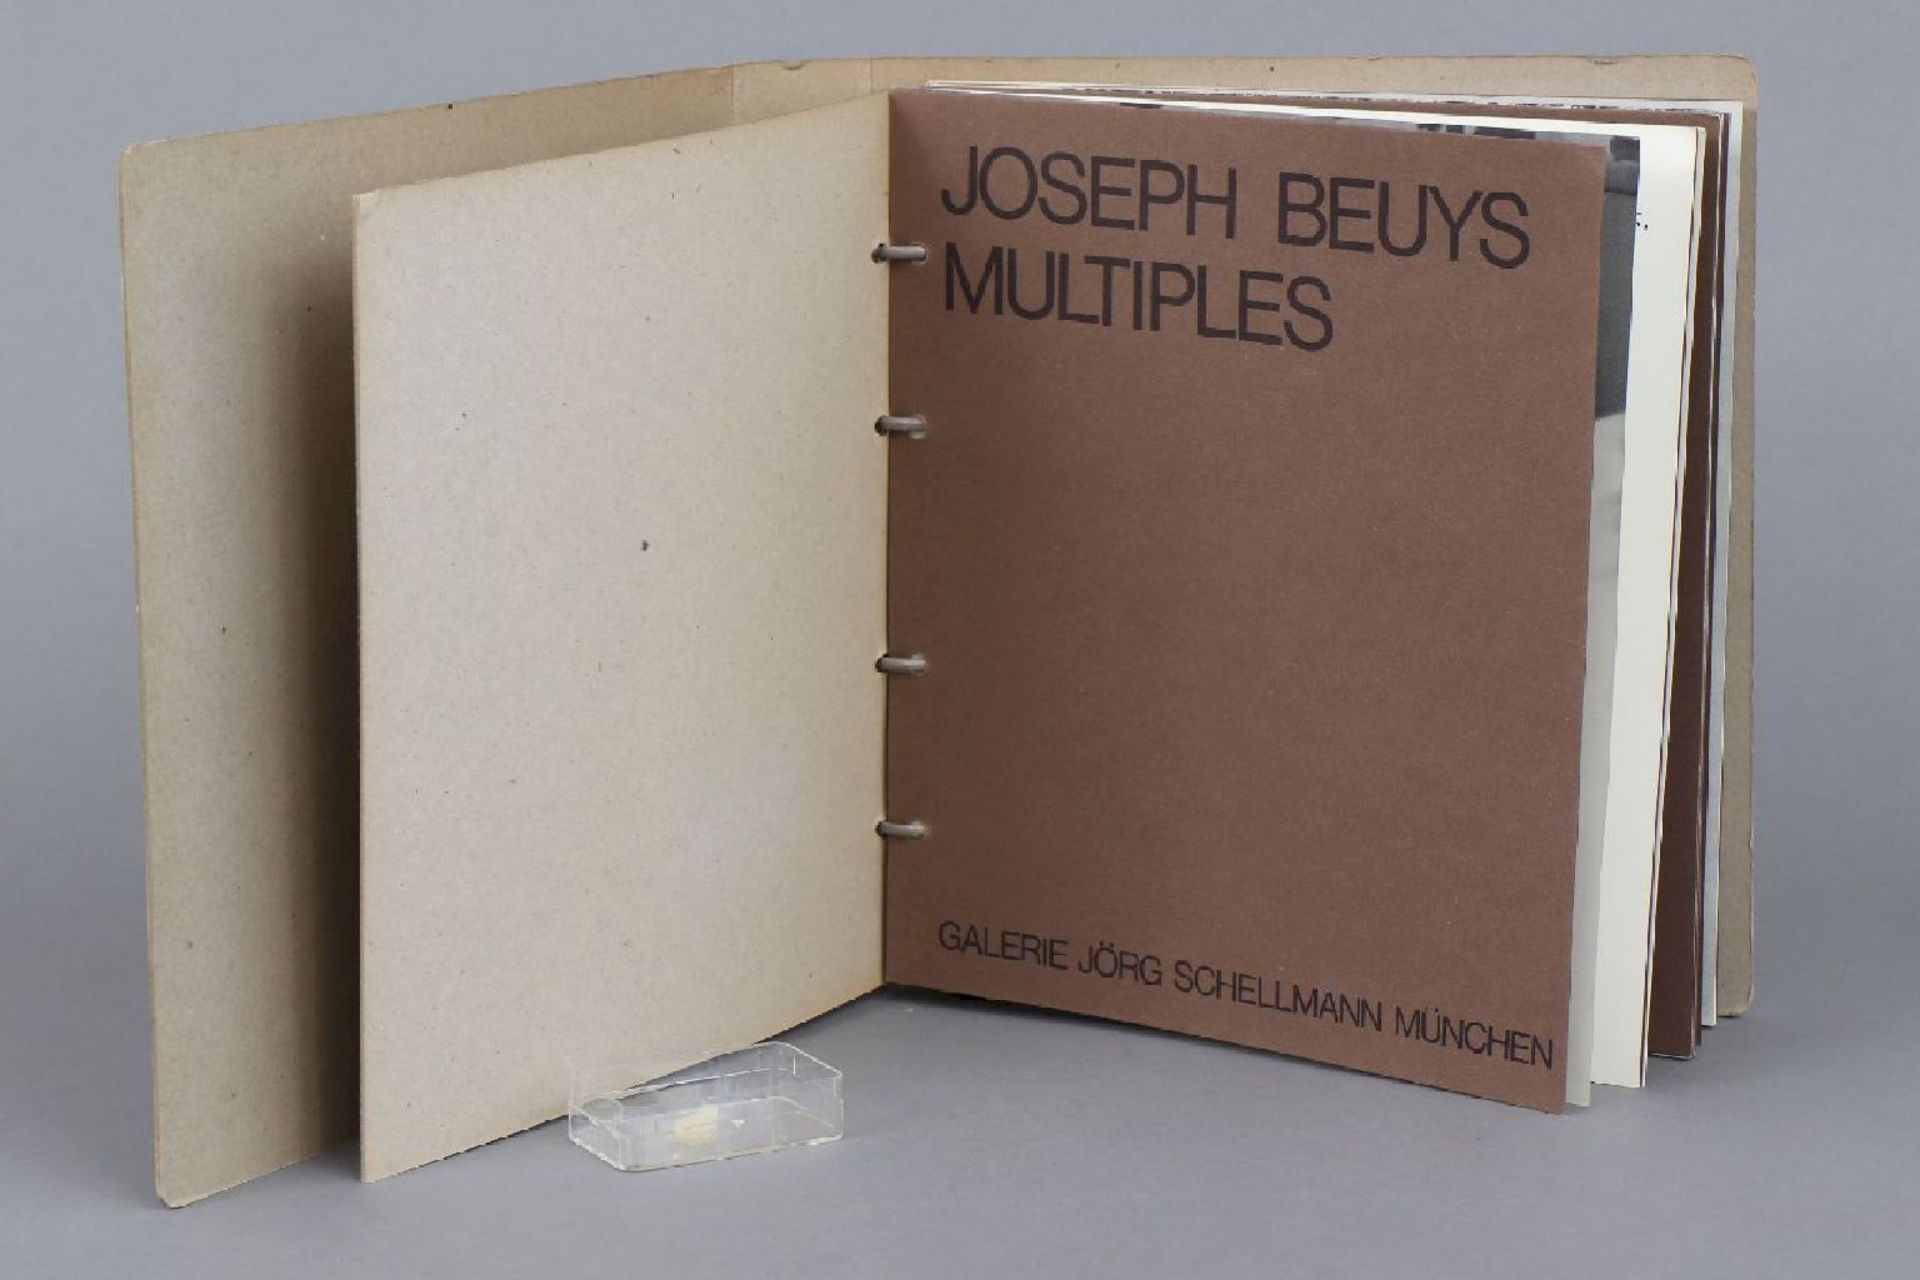 JOSEPH BEUYS (1921-1986) Ringbuch ¨Multiples¨ mit Fett-Fingernagel (1972) - Image 2 of 5